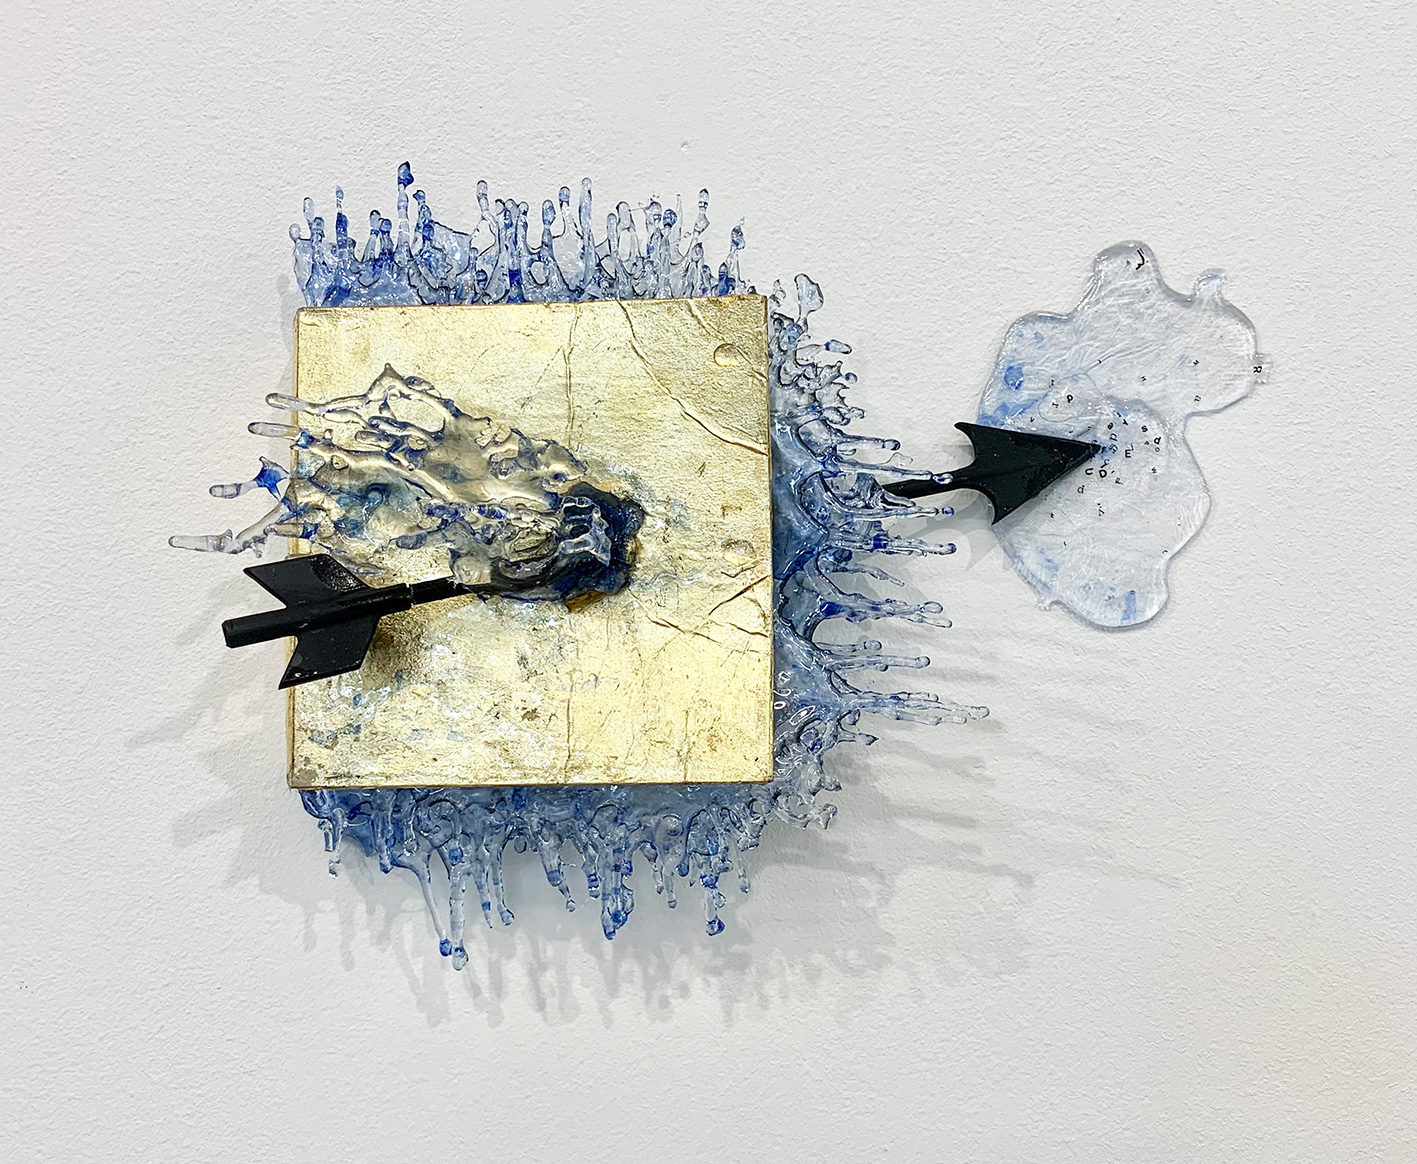 ANNALÙ, Watertales N°7, 2019, Vetroresina, foglia oro, inchiostro, ferro, 26 x 35 x 8 cm